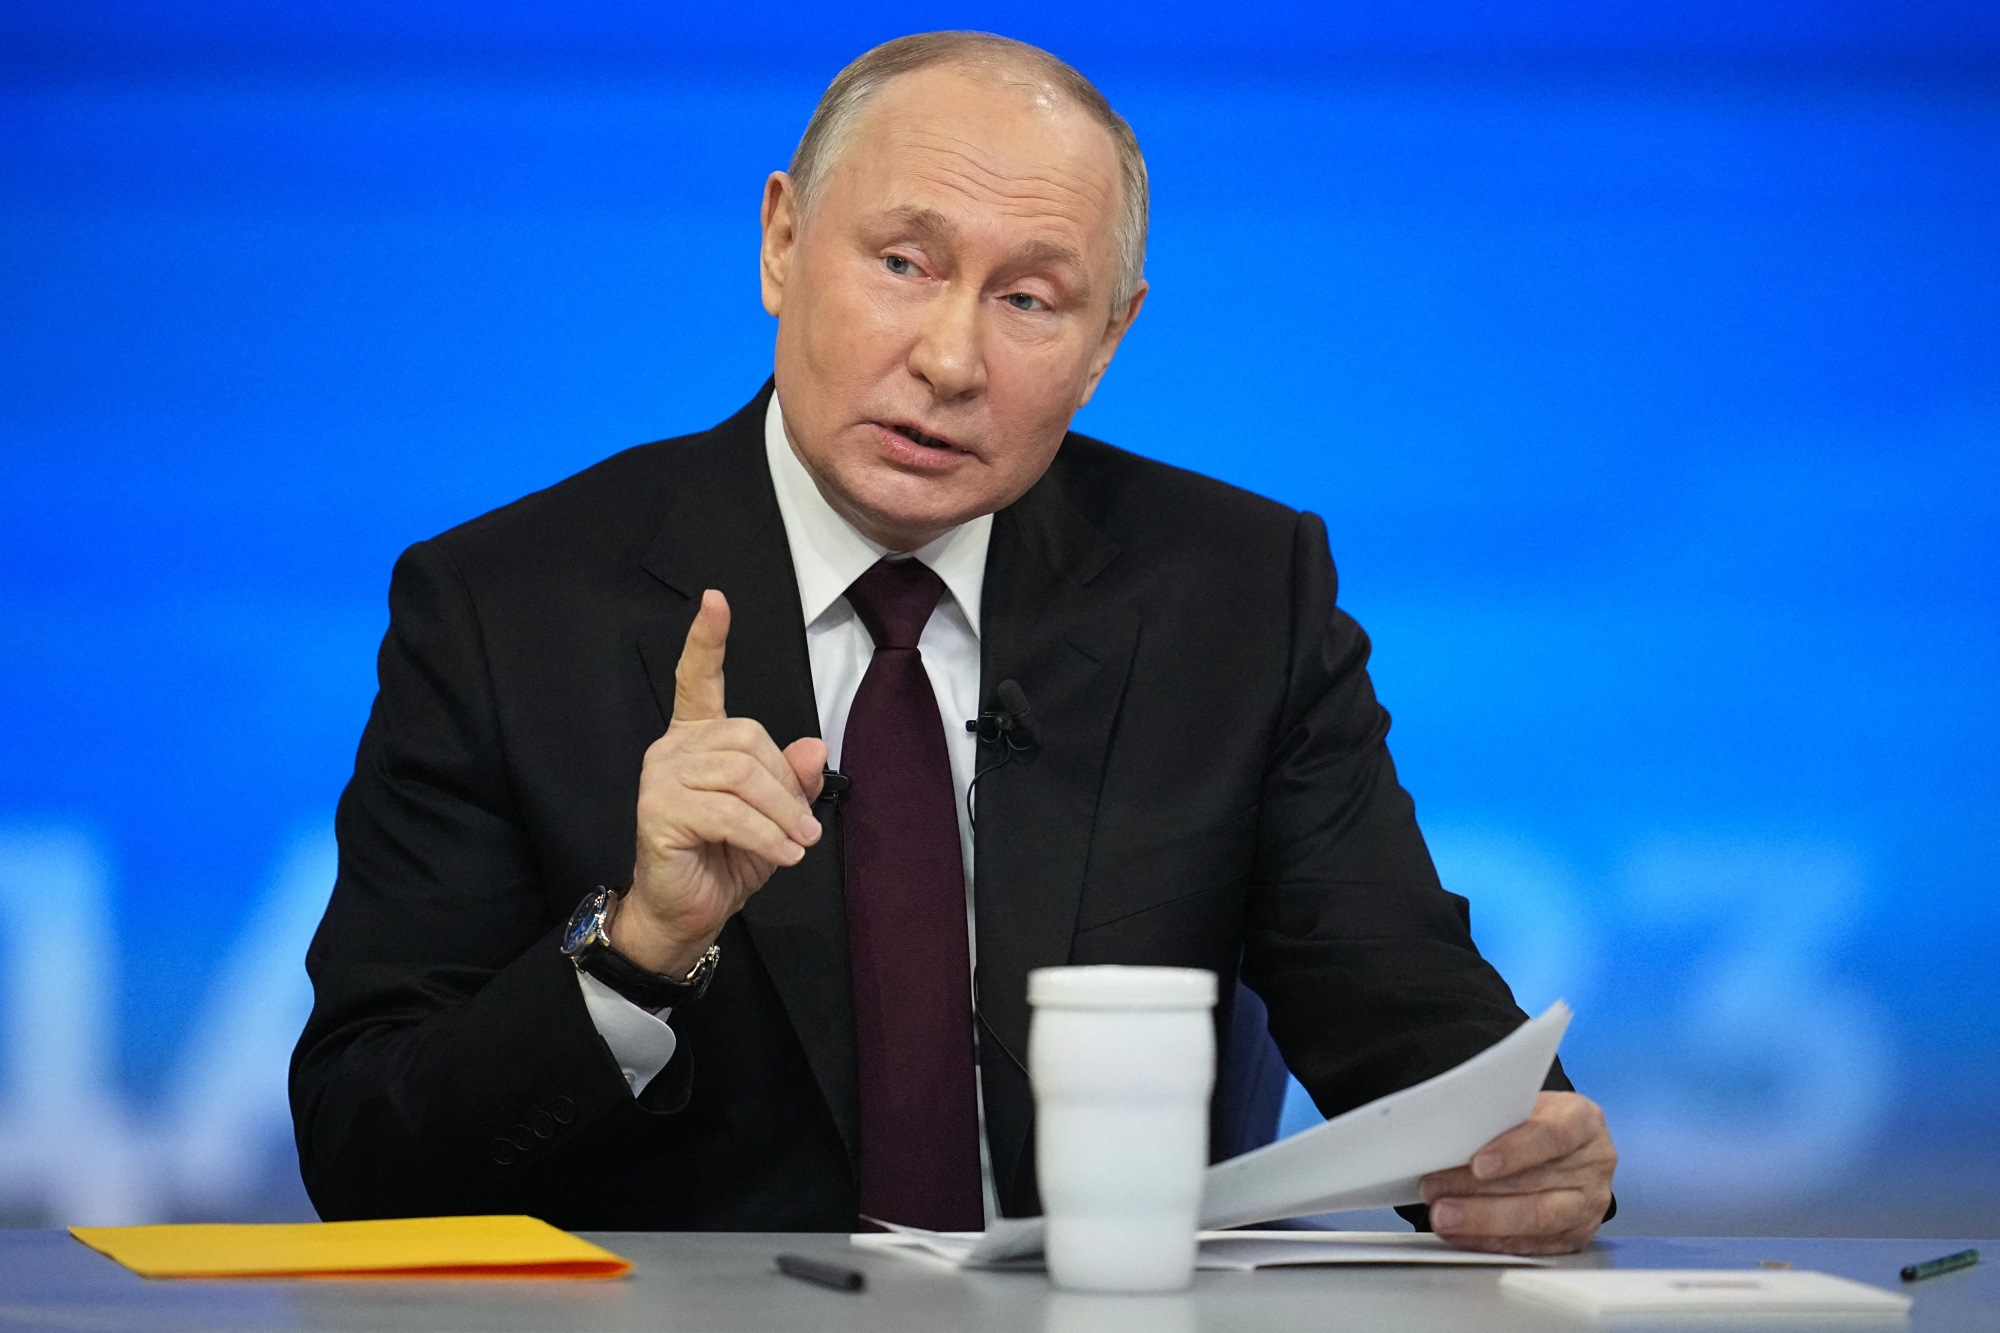 Putin Vows Russian Victory in War as Ukraine's Allies Waver